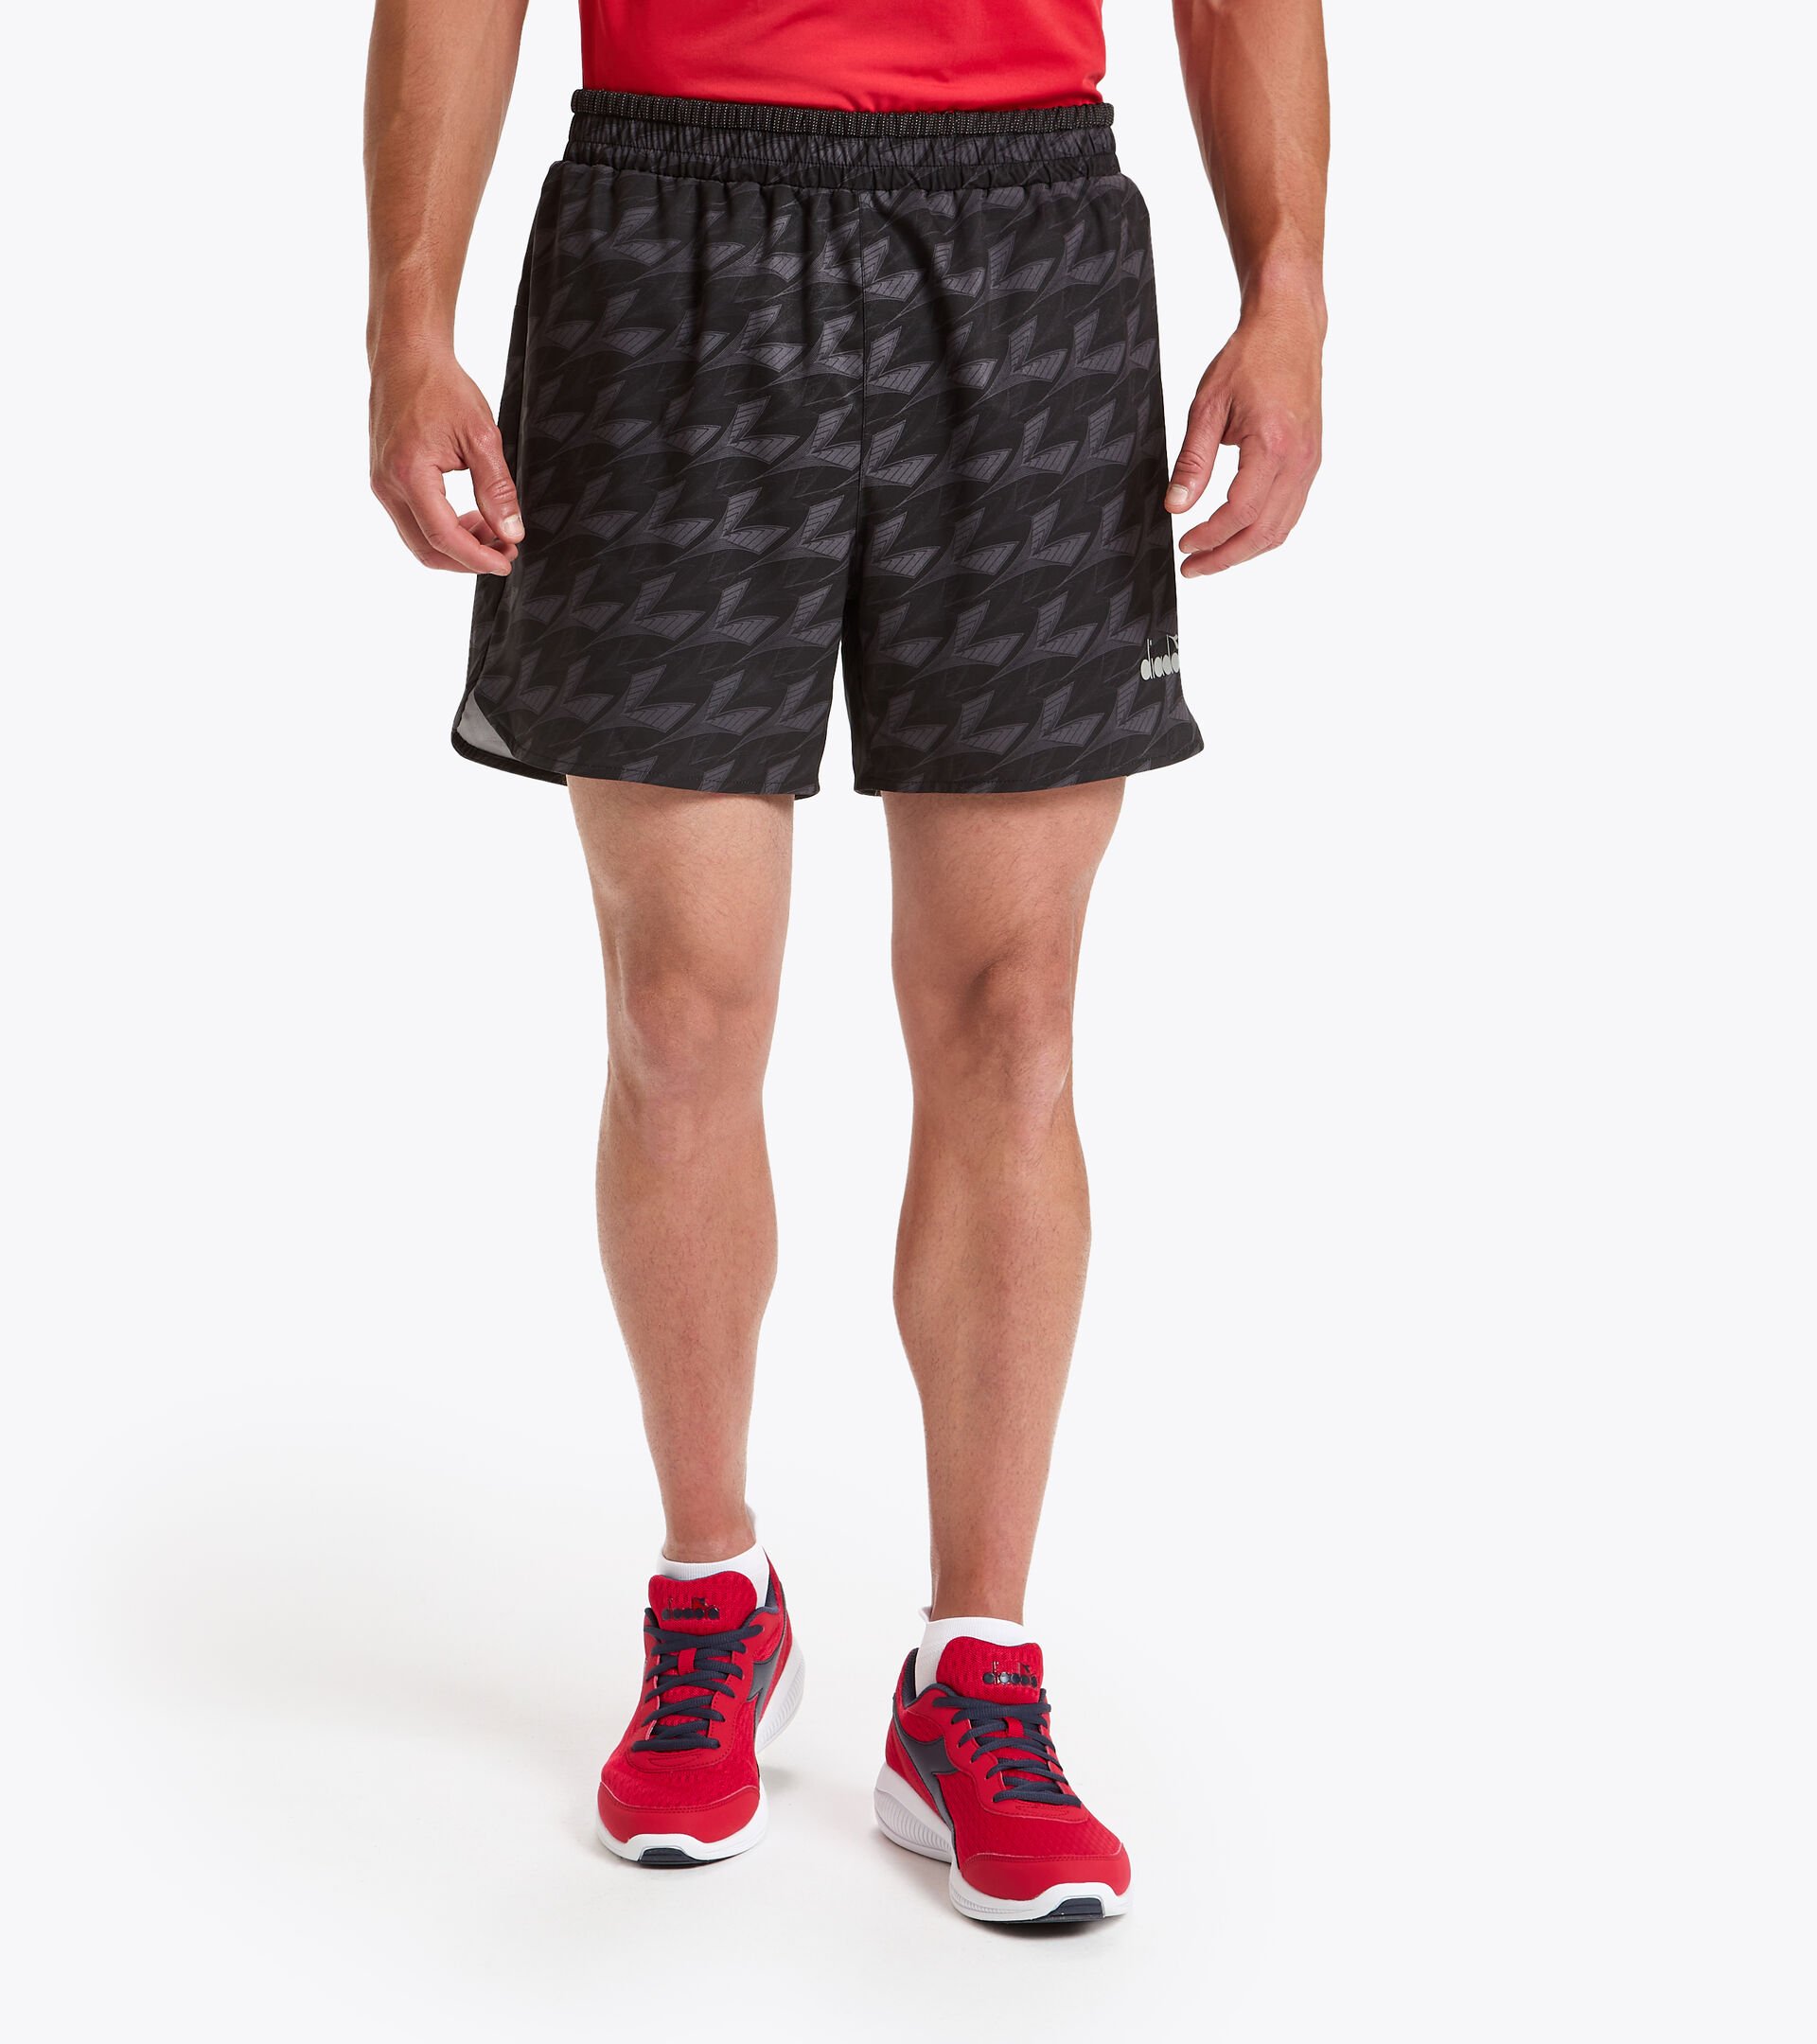 Shorts para correr - Hombrer MICROFIBER SHORTS 12,5 CM NEGRO POR TODO - Diadora